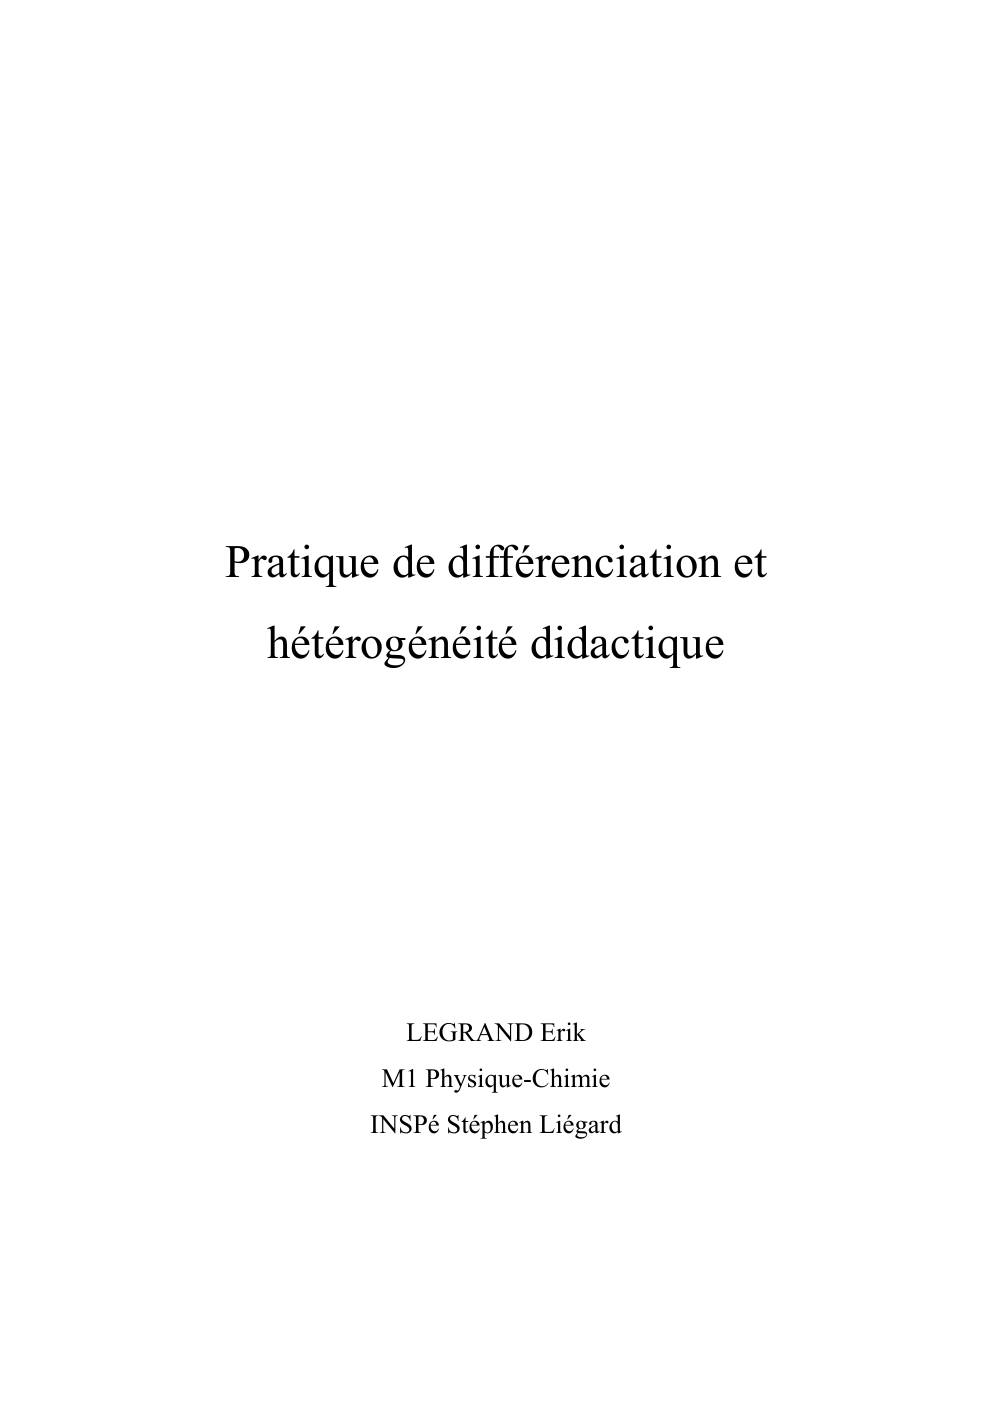 Prévisualisation du document Pratique de différenciation et hétérogénéité didactique - réfléxions en physqiue-chimie